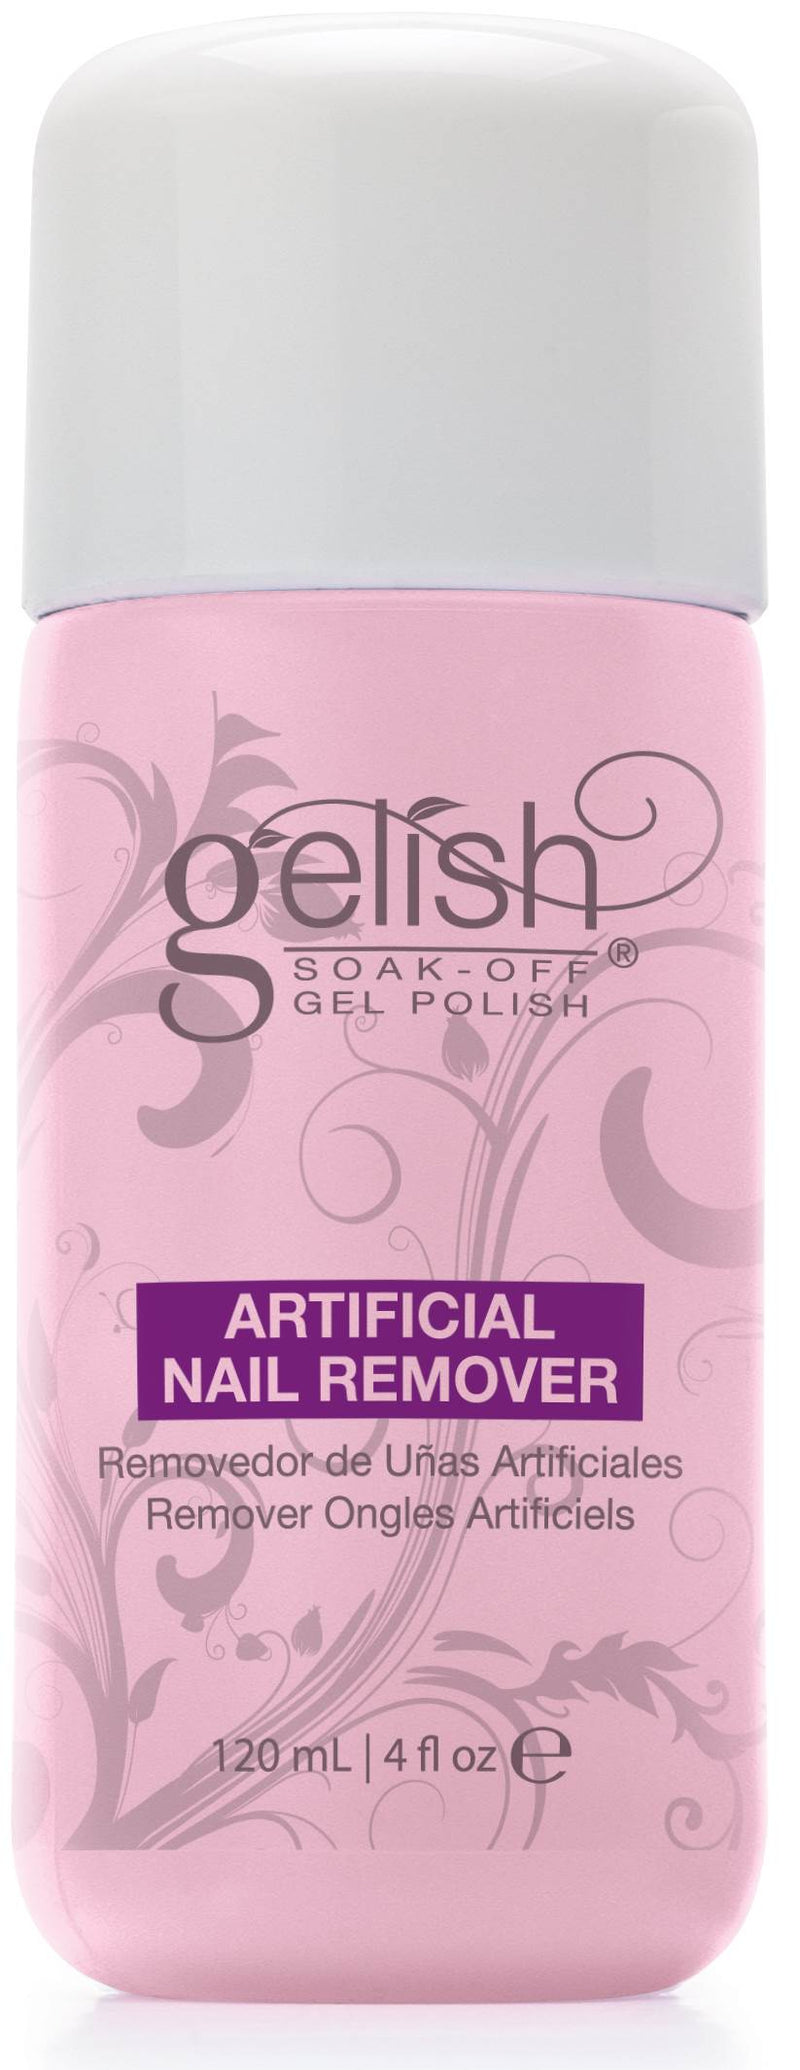 Gelish Basix Care Kit with Gelish Mini 5 Bottle Gel Nail Polish Set (2 Pack)